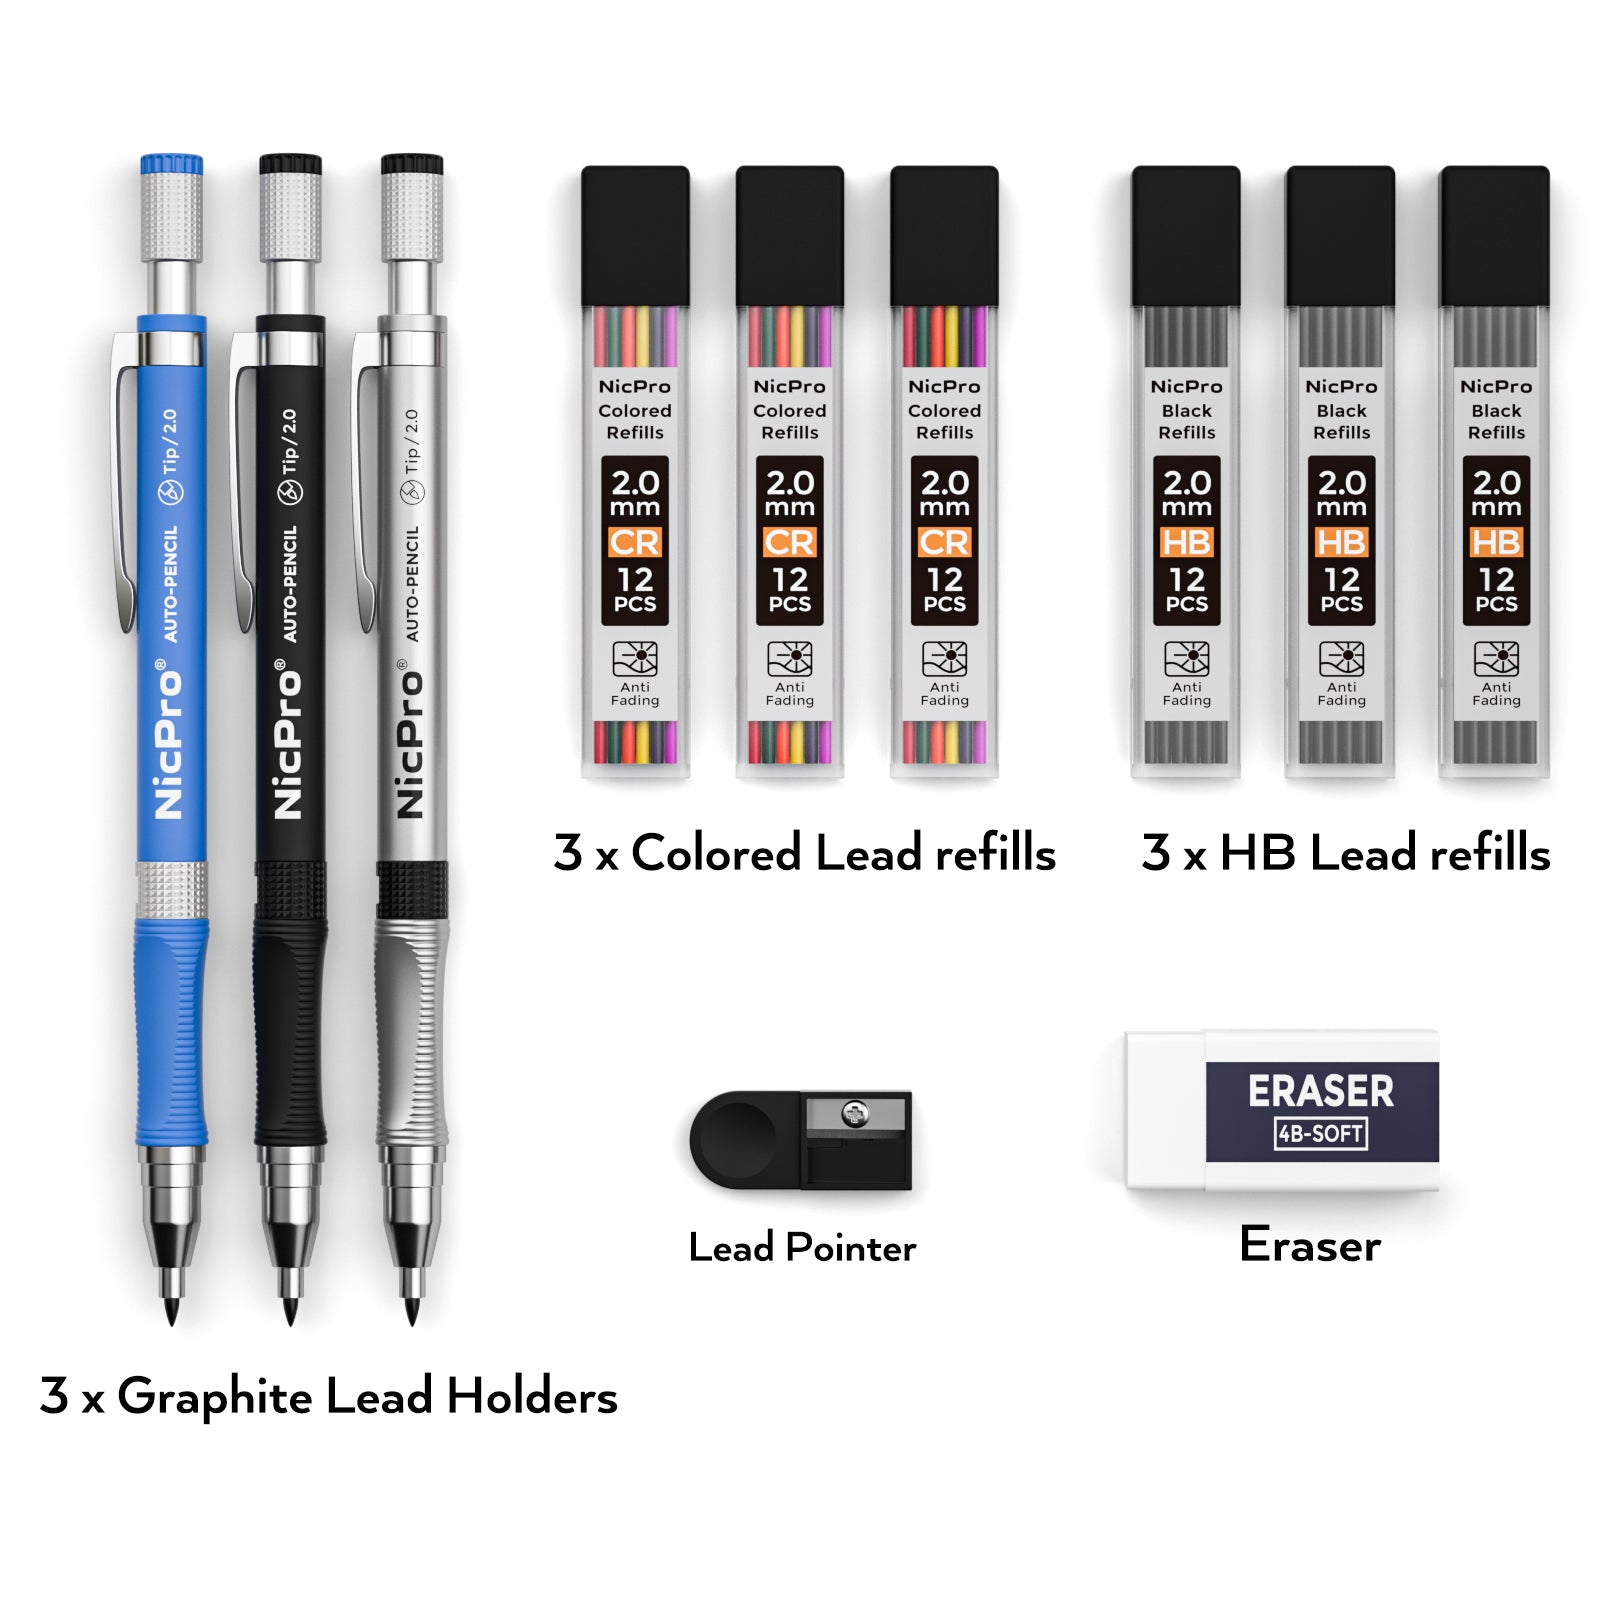 Professional Drawing Pencil Eraser Graphite Sketch Color Pencil